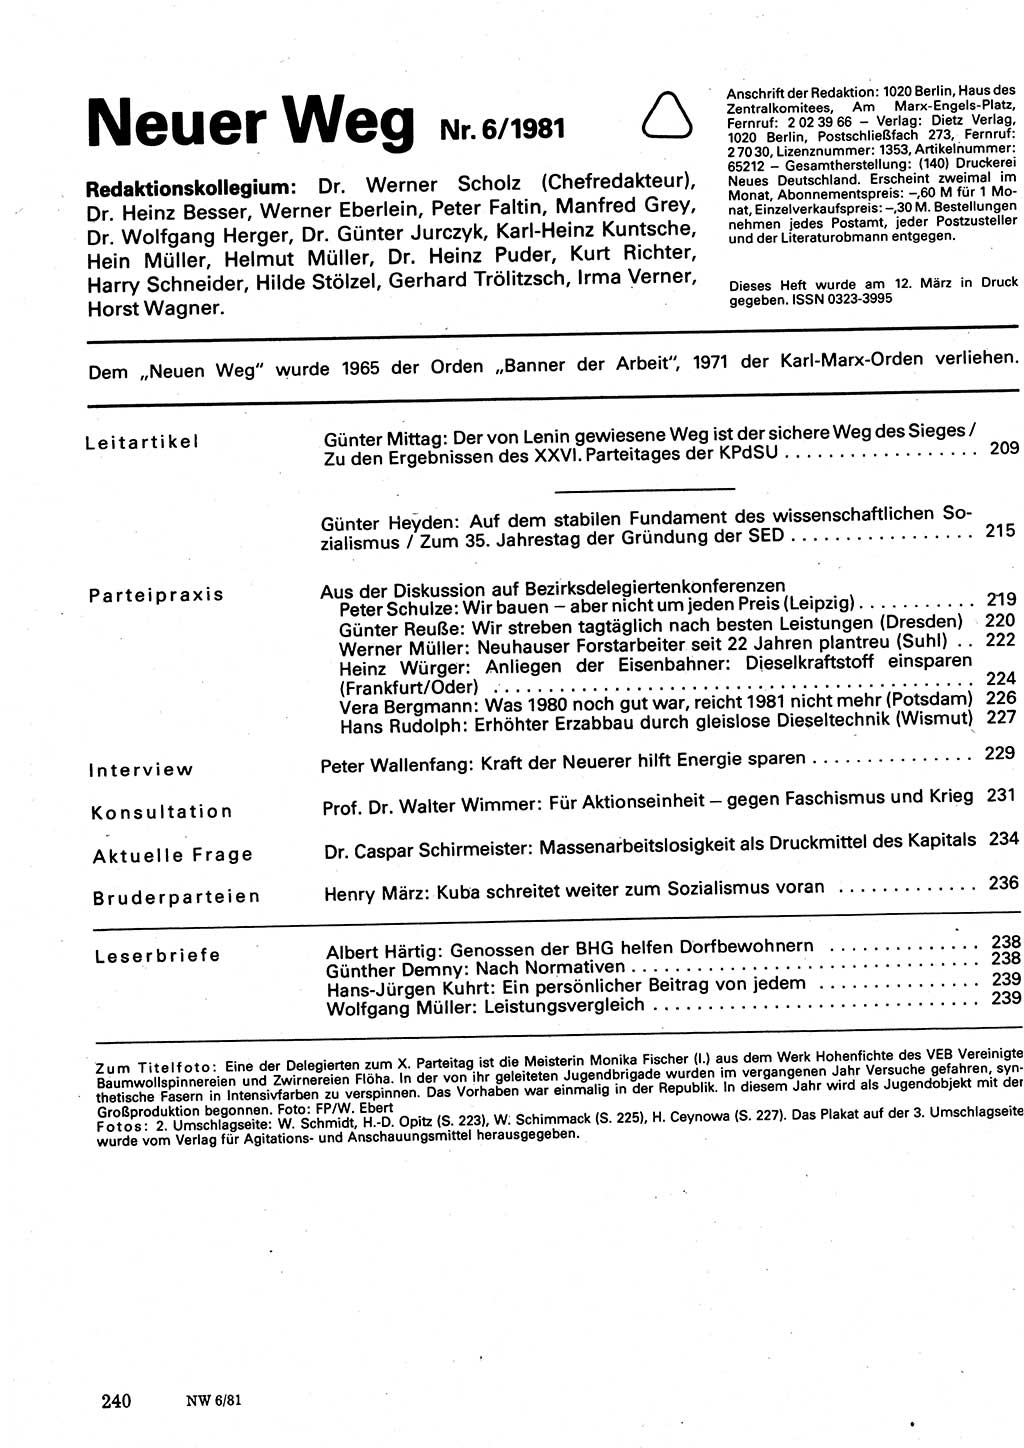 Neuer Weg (NW), Organ des Zentralkomitees (ZK) der SED (Sozialistische Einheitspartei Deutschlands) für Fragen des Parteilebens, 36. Jahrgang [Deutsche Demokratische Republik (DDR)] 1981, Seite 240 (NW ZK SED DDR 1981, S. 240)